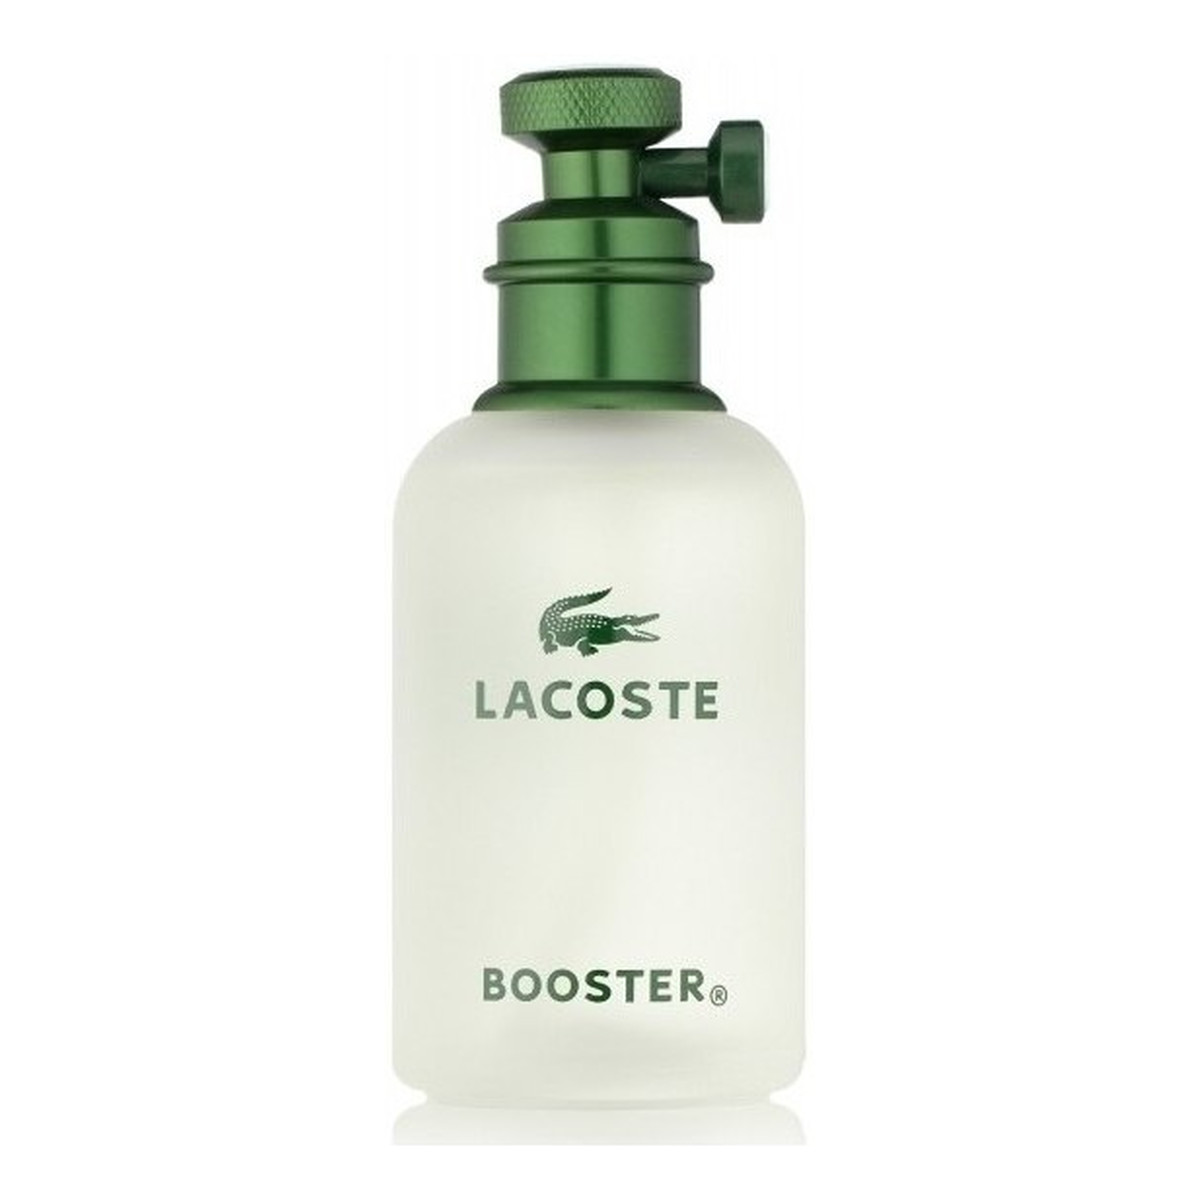 Lacoste Booster woda toaletowa dla mężczyzn 125ml